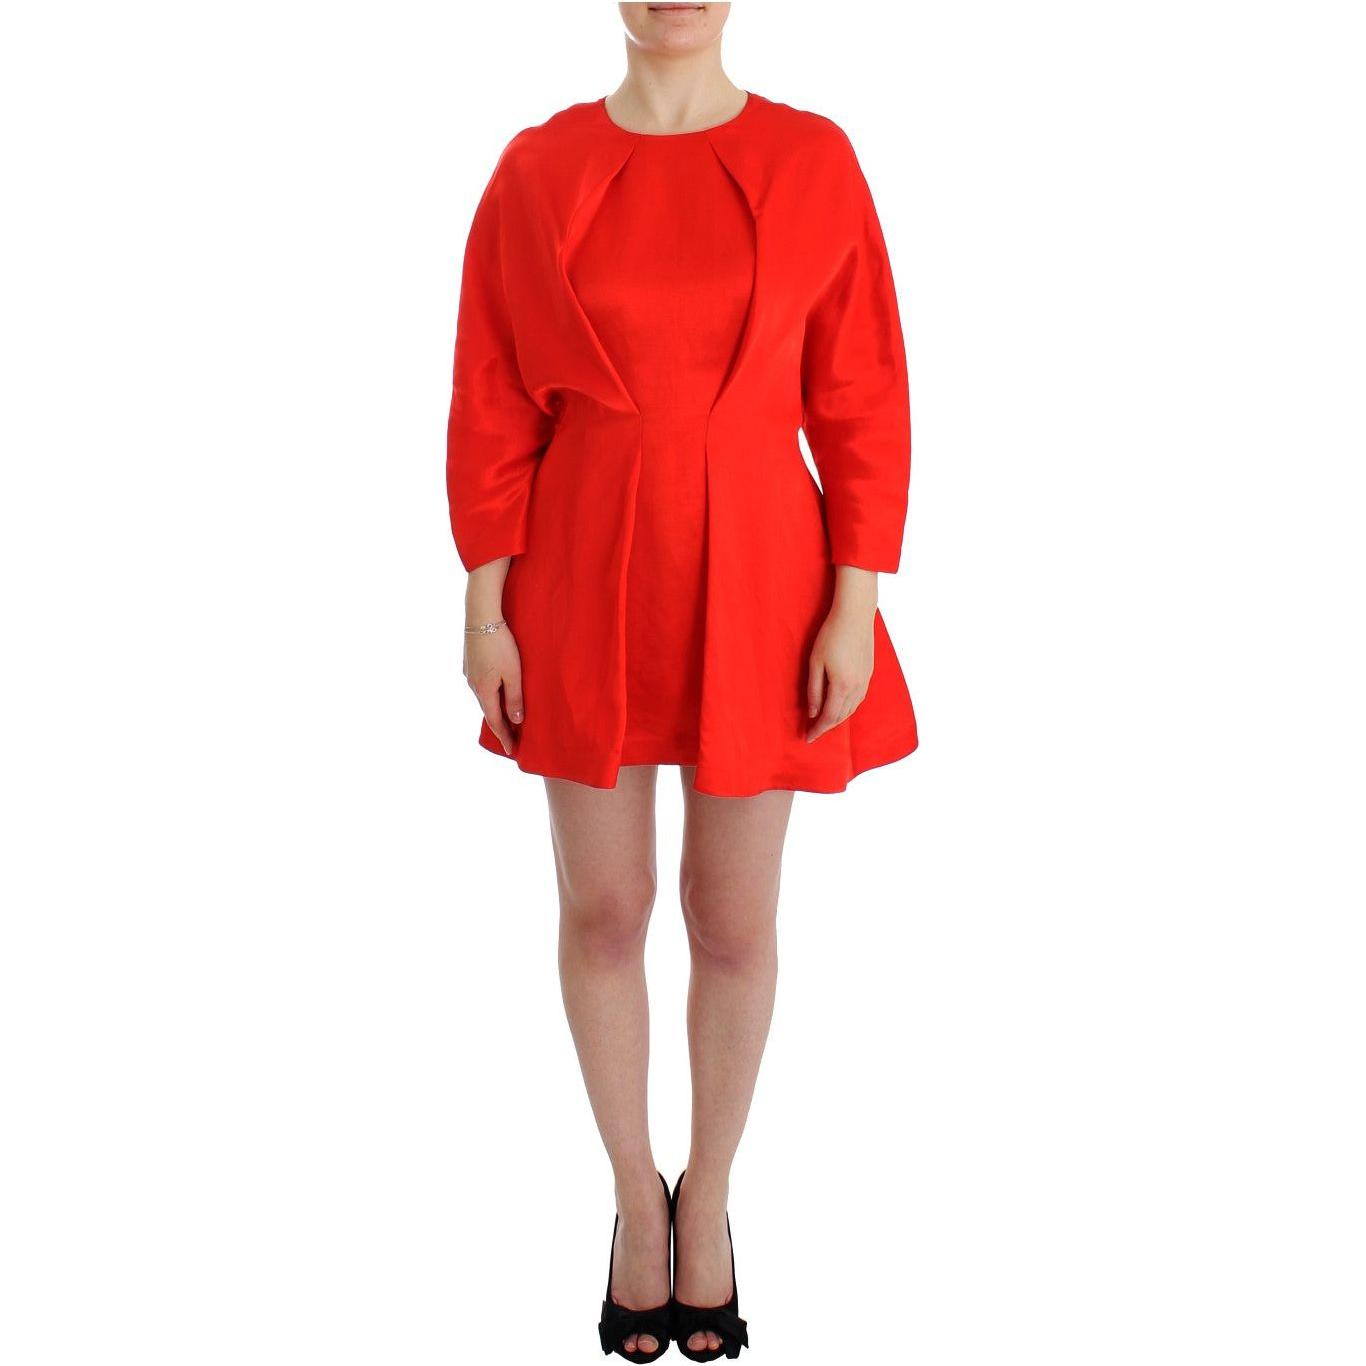 Fyodor Golan Radiant Red Linen Blend Artisan Dress red-mini-linen-3-4-sleeve-sheath-dress 185328-red-mini-linen-34-sleeve-sheath-dress.jpg